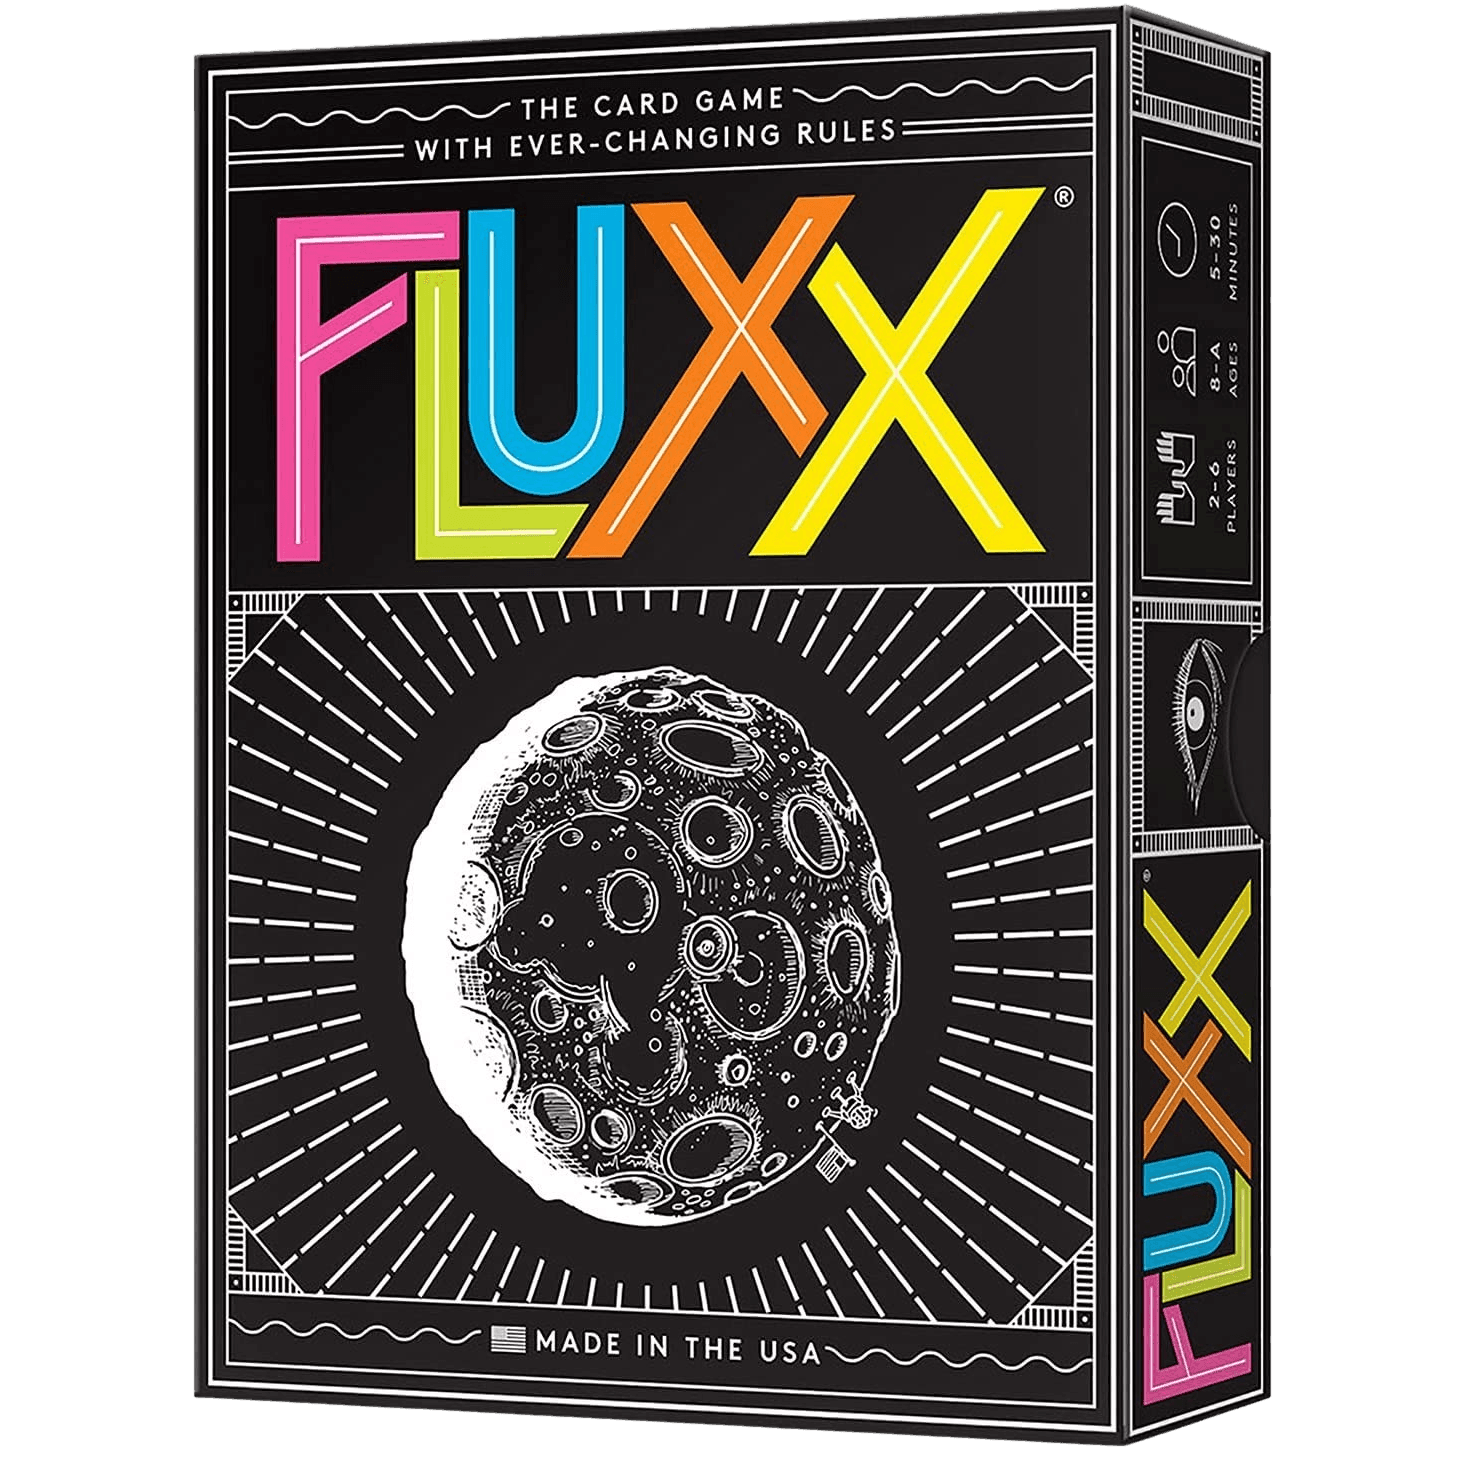 Fluxx 5.0 - The Card Vault